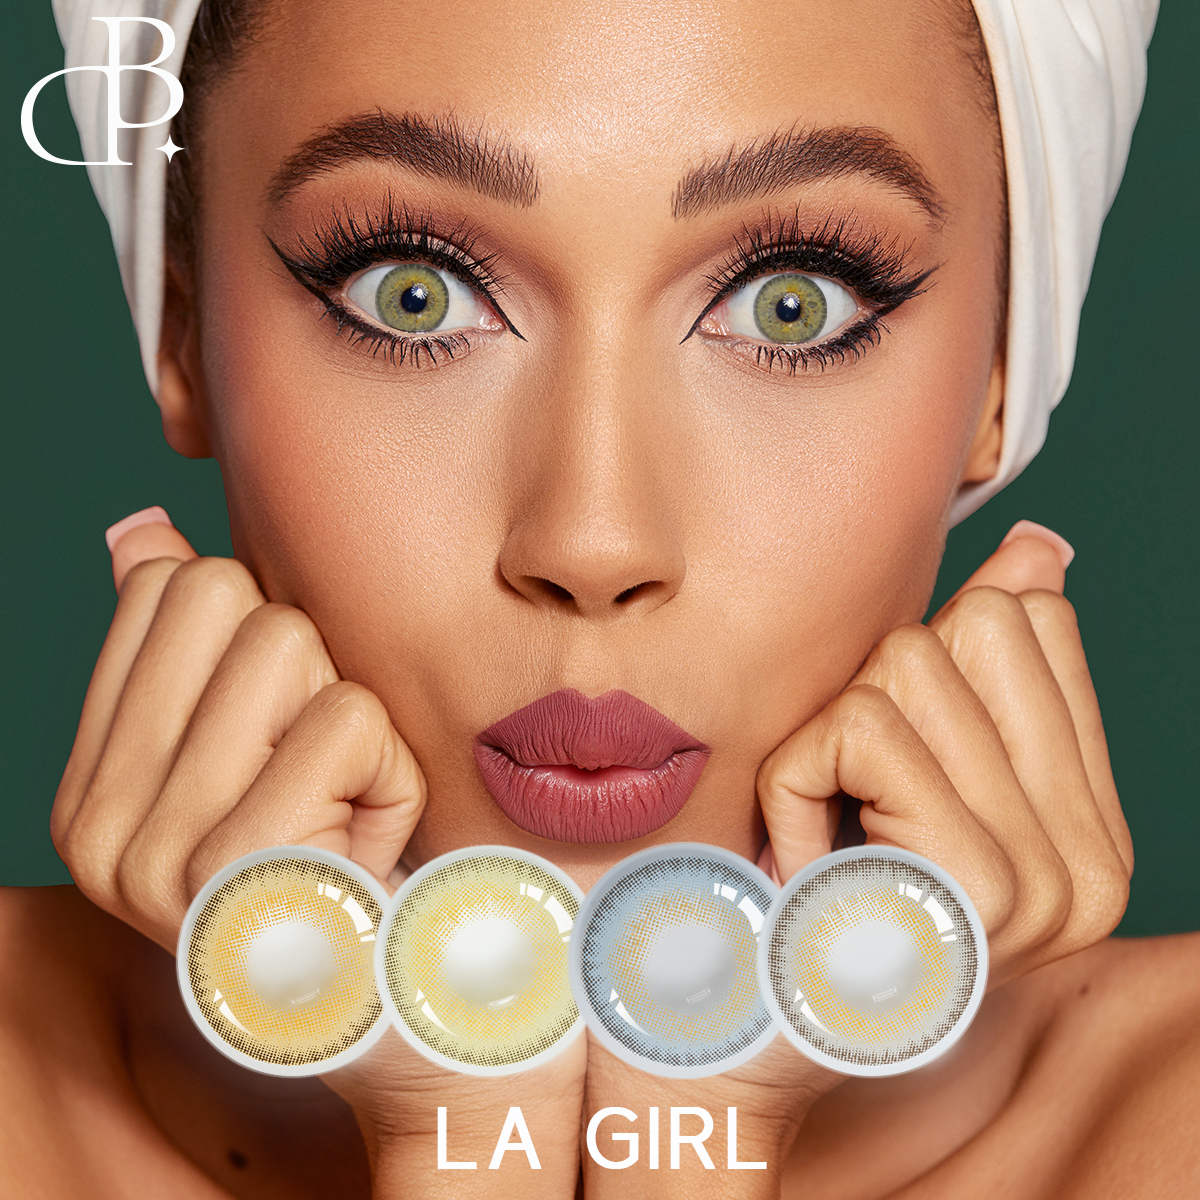 LA GIRL загварын халуун хэв маягийн бөөний өнгөт контакт линзийг захиалгат хувийн шошго хямд үнээр худалдан авагчдаас халуун дулаан магтаал хүртэх болно.